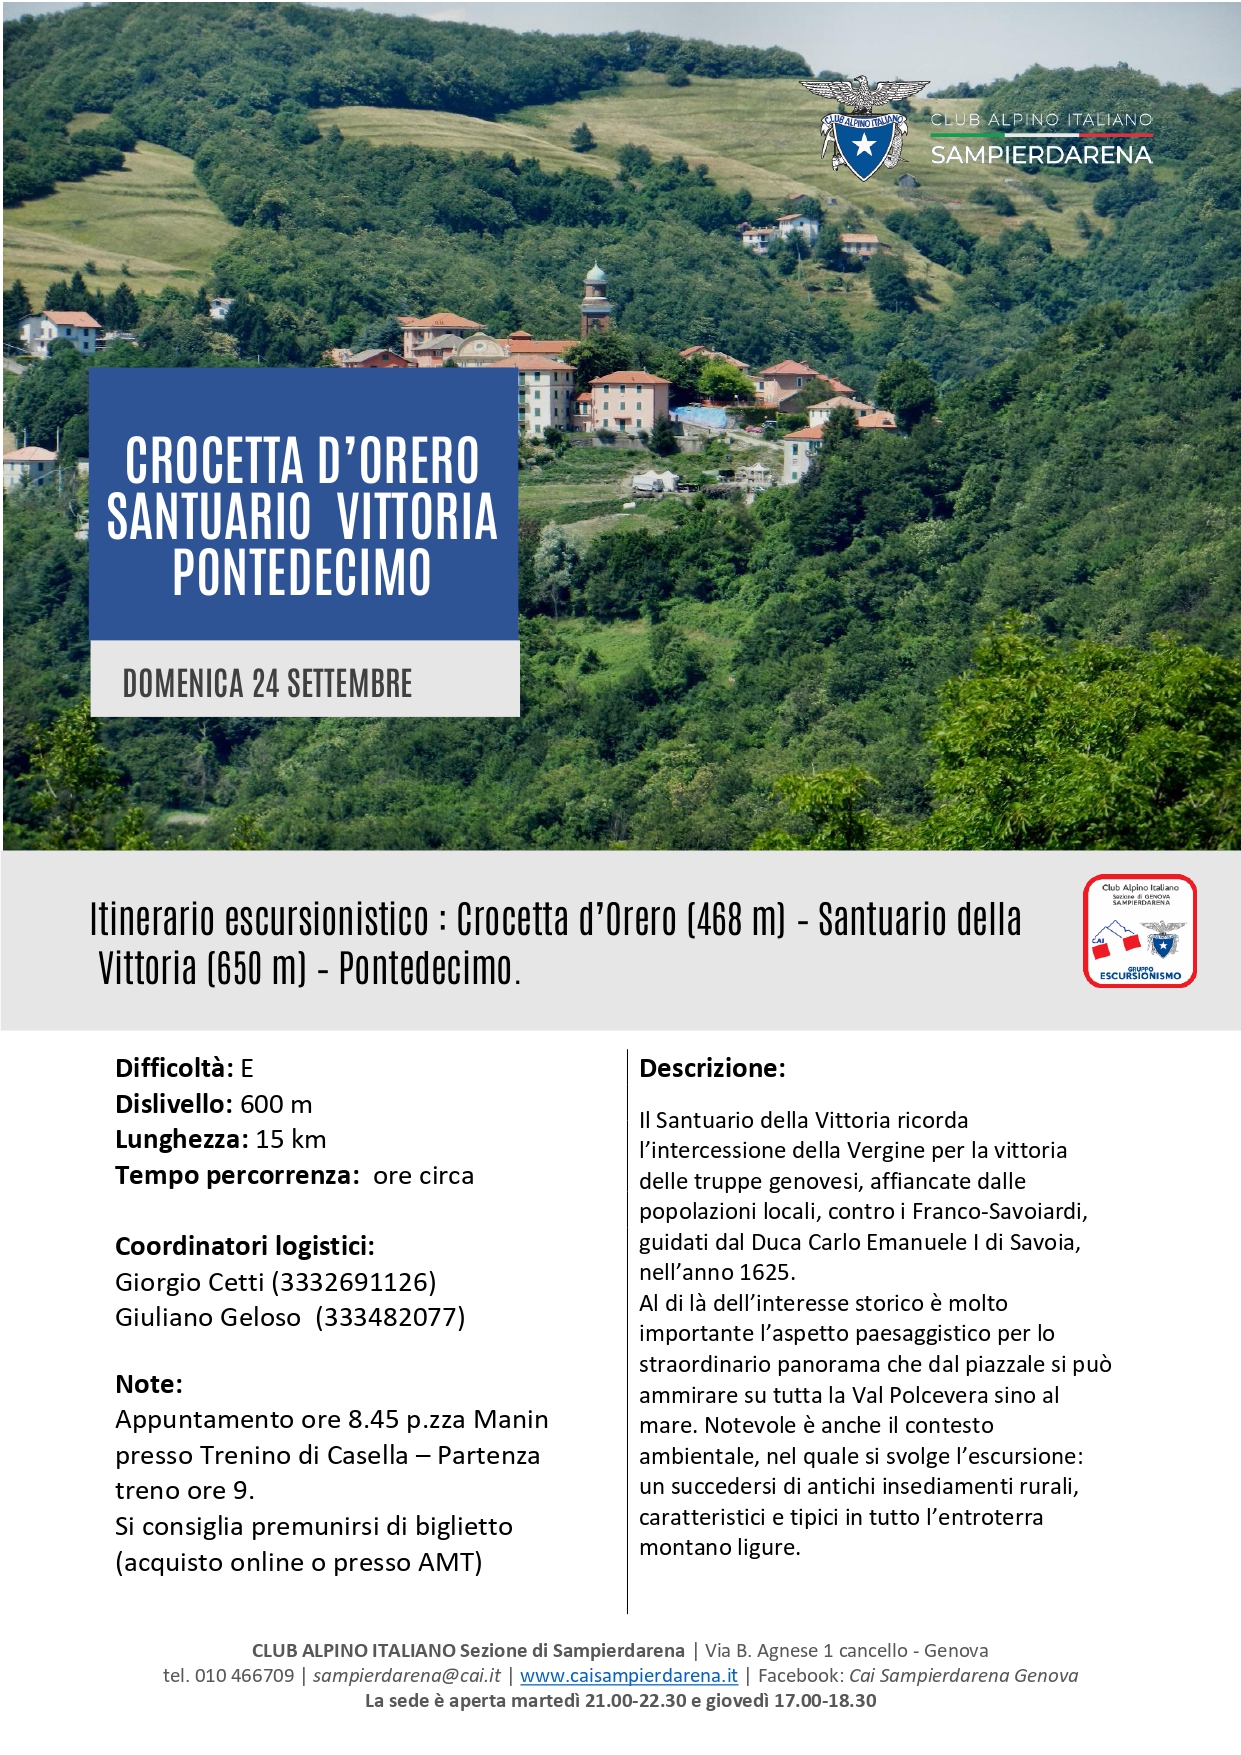 Domenica 24 Settembre – Escursionismo – Crocetta d’Orero-Santuario Vittoria-Pontedecimo